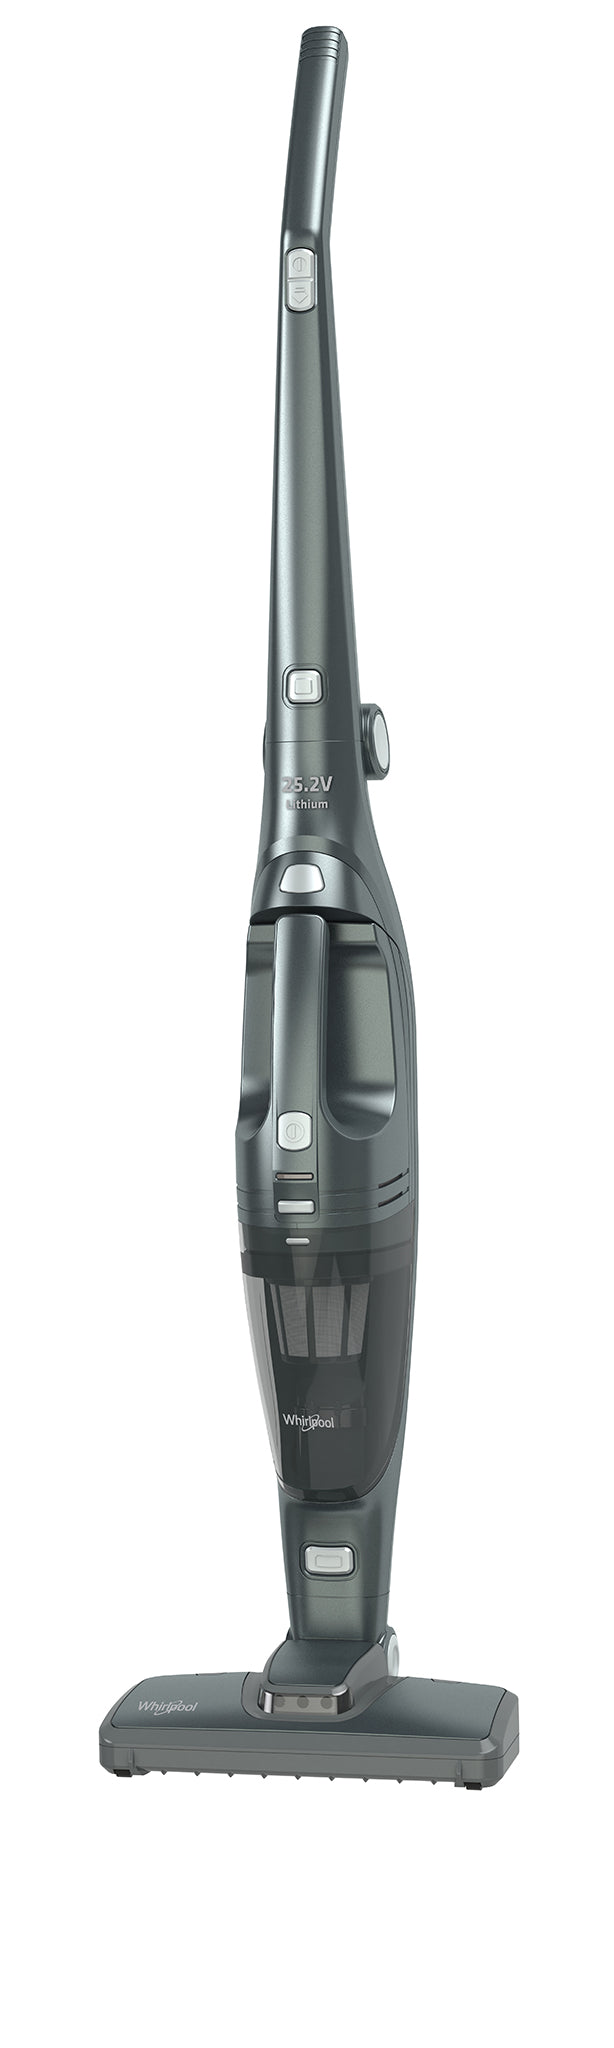 WHIRLPOOL VS2511 Stick Vacuum Cleaner